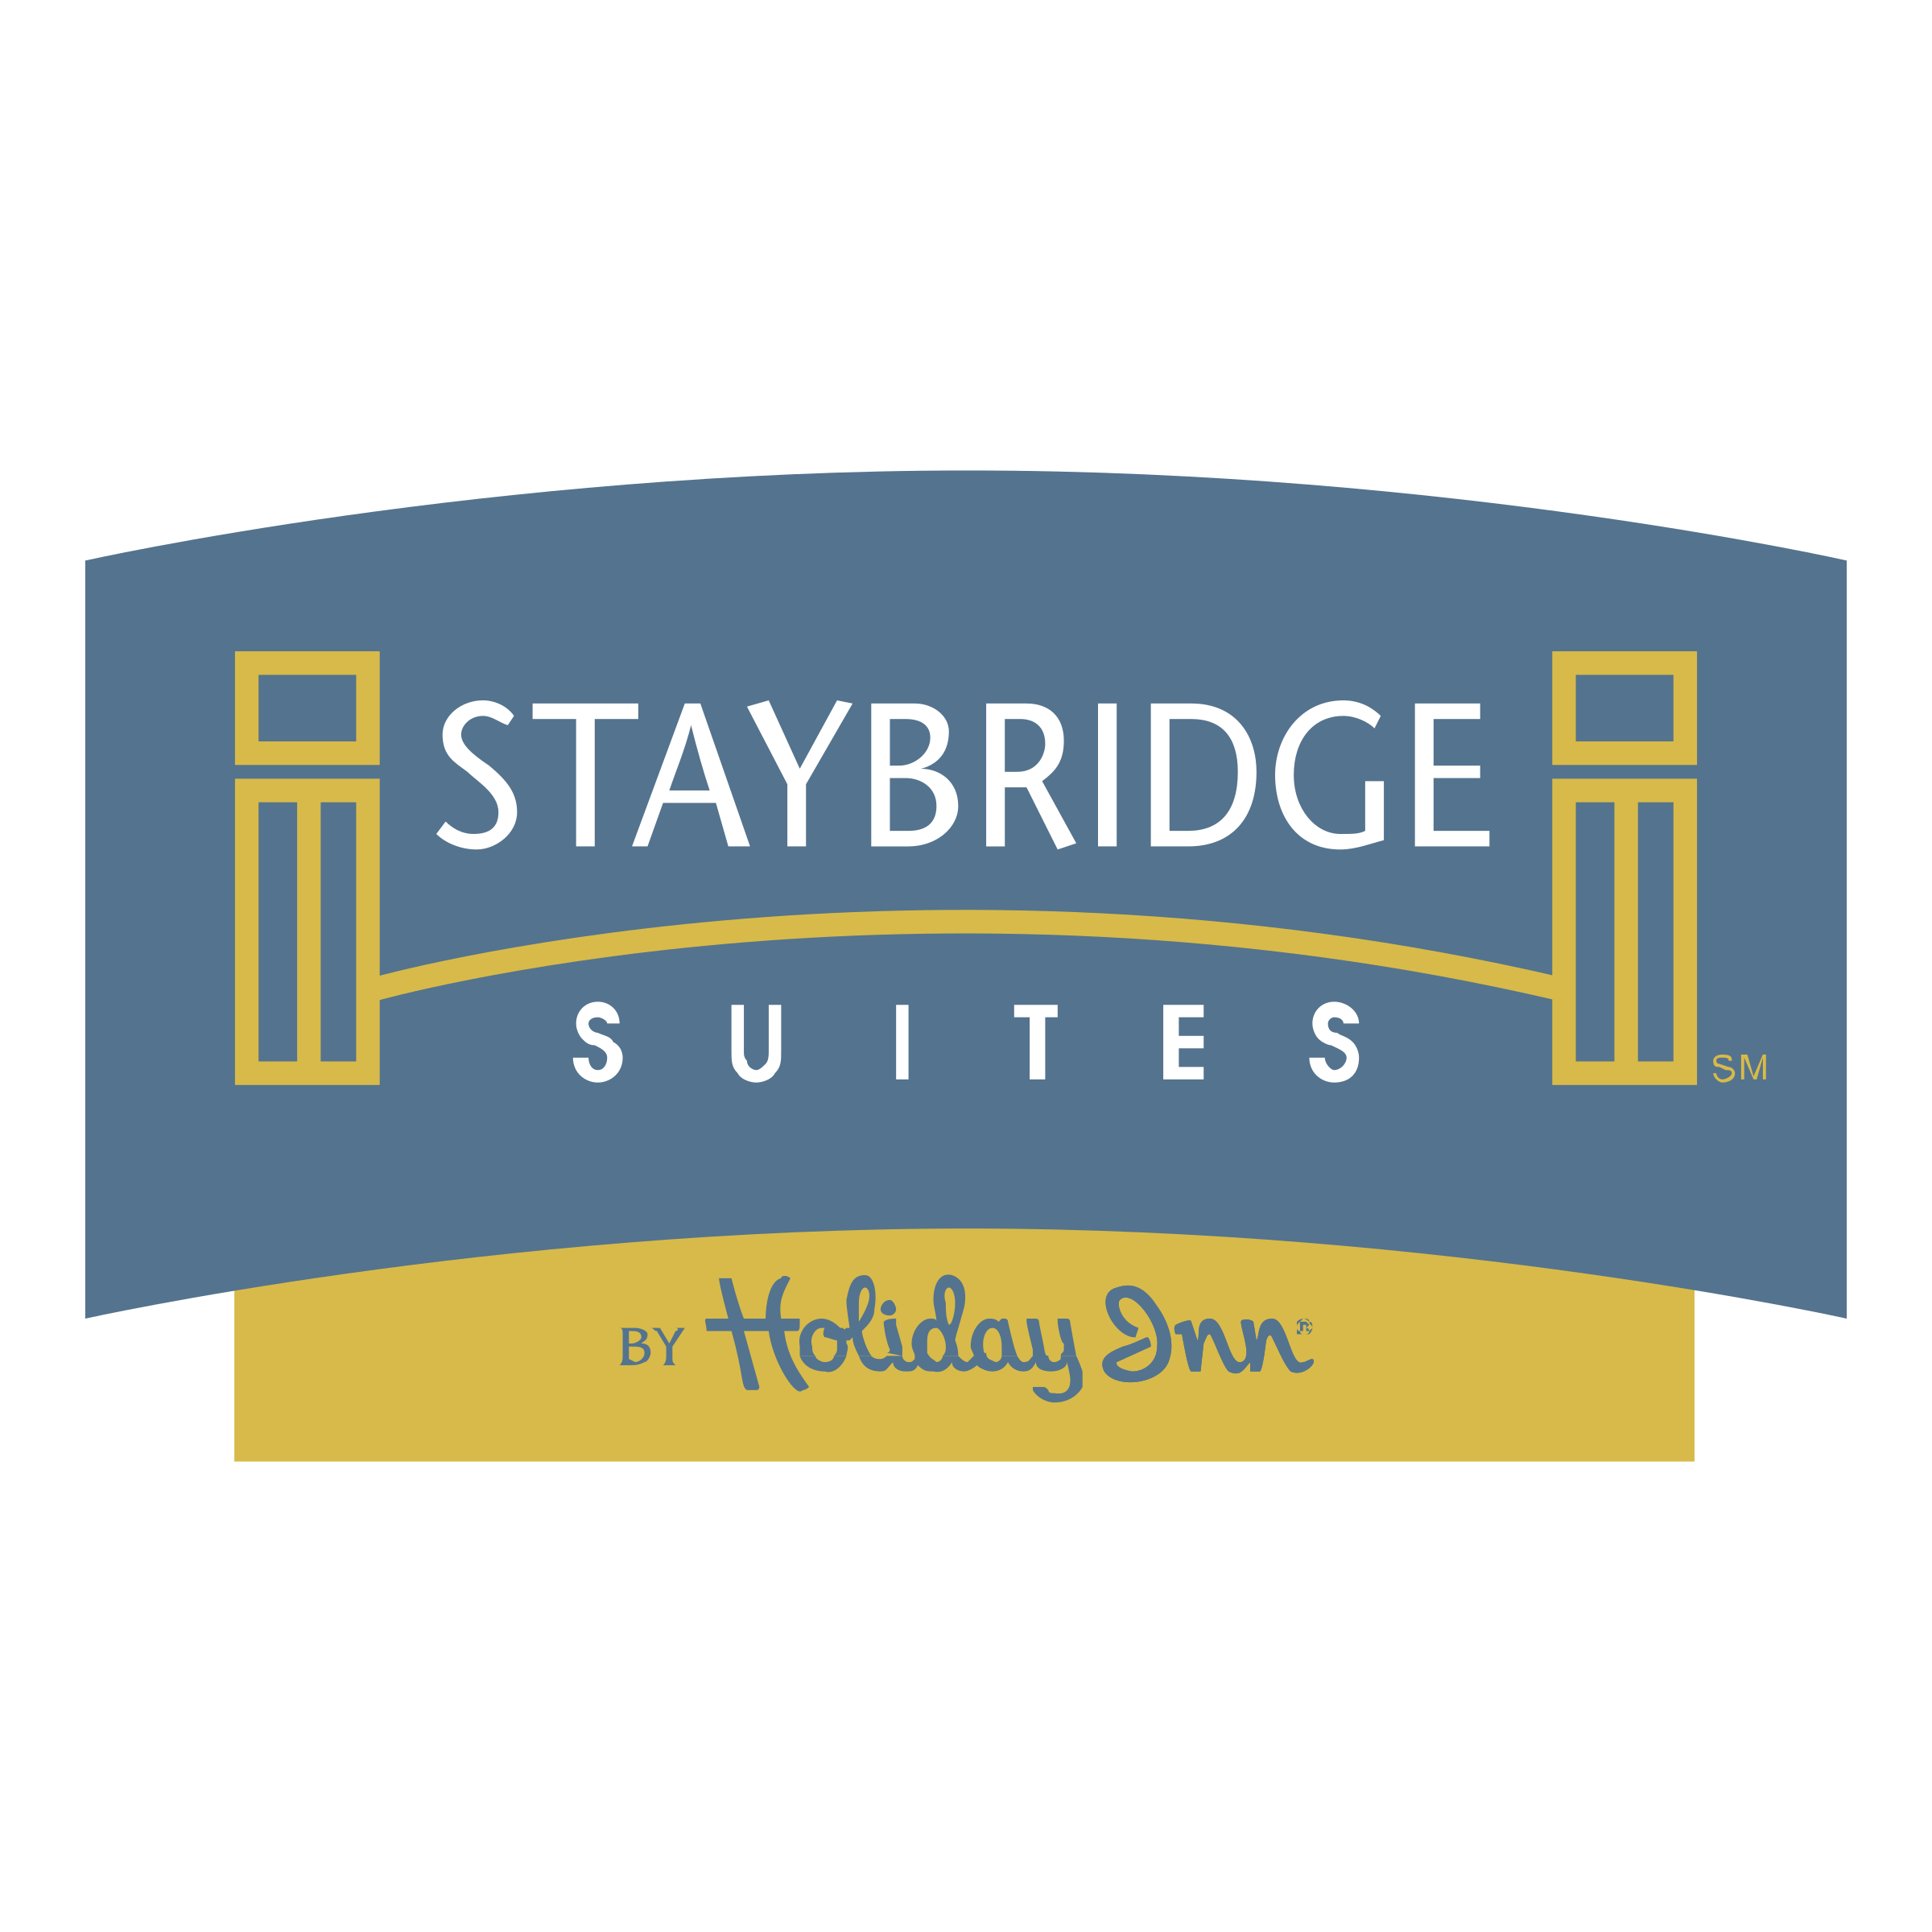 Staybridge Logo - Staybridge Suites Logo PNG Transparent & SVG Vector